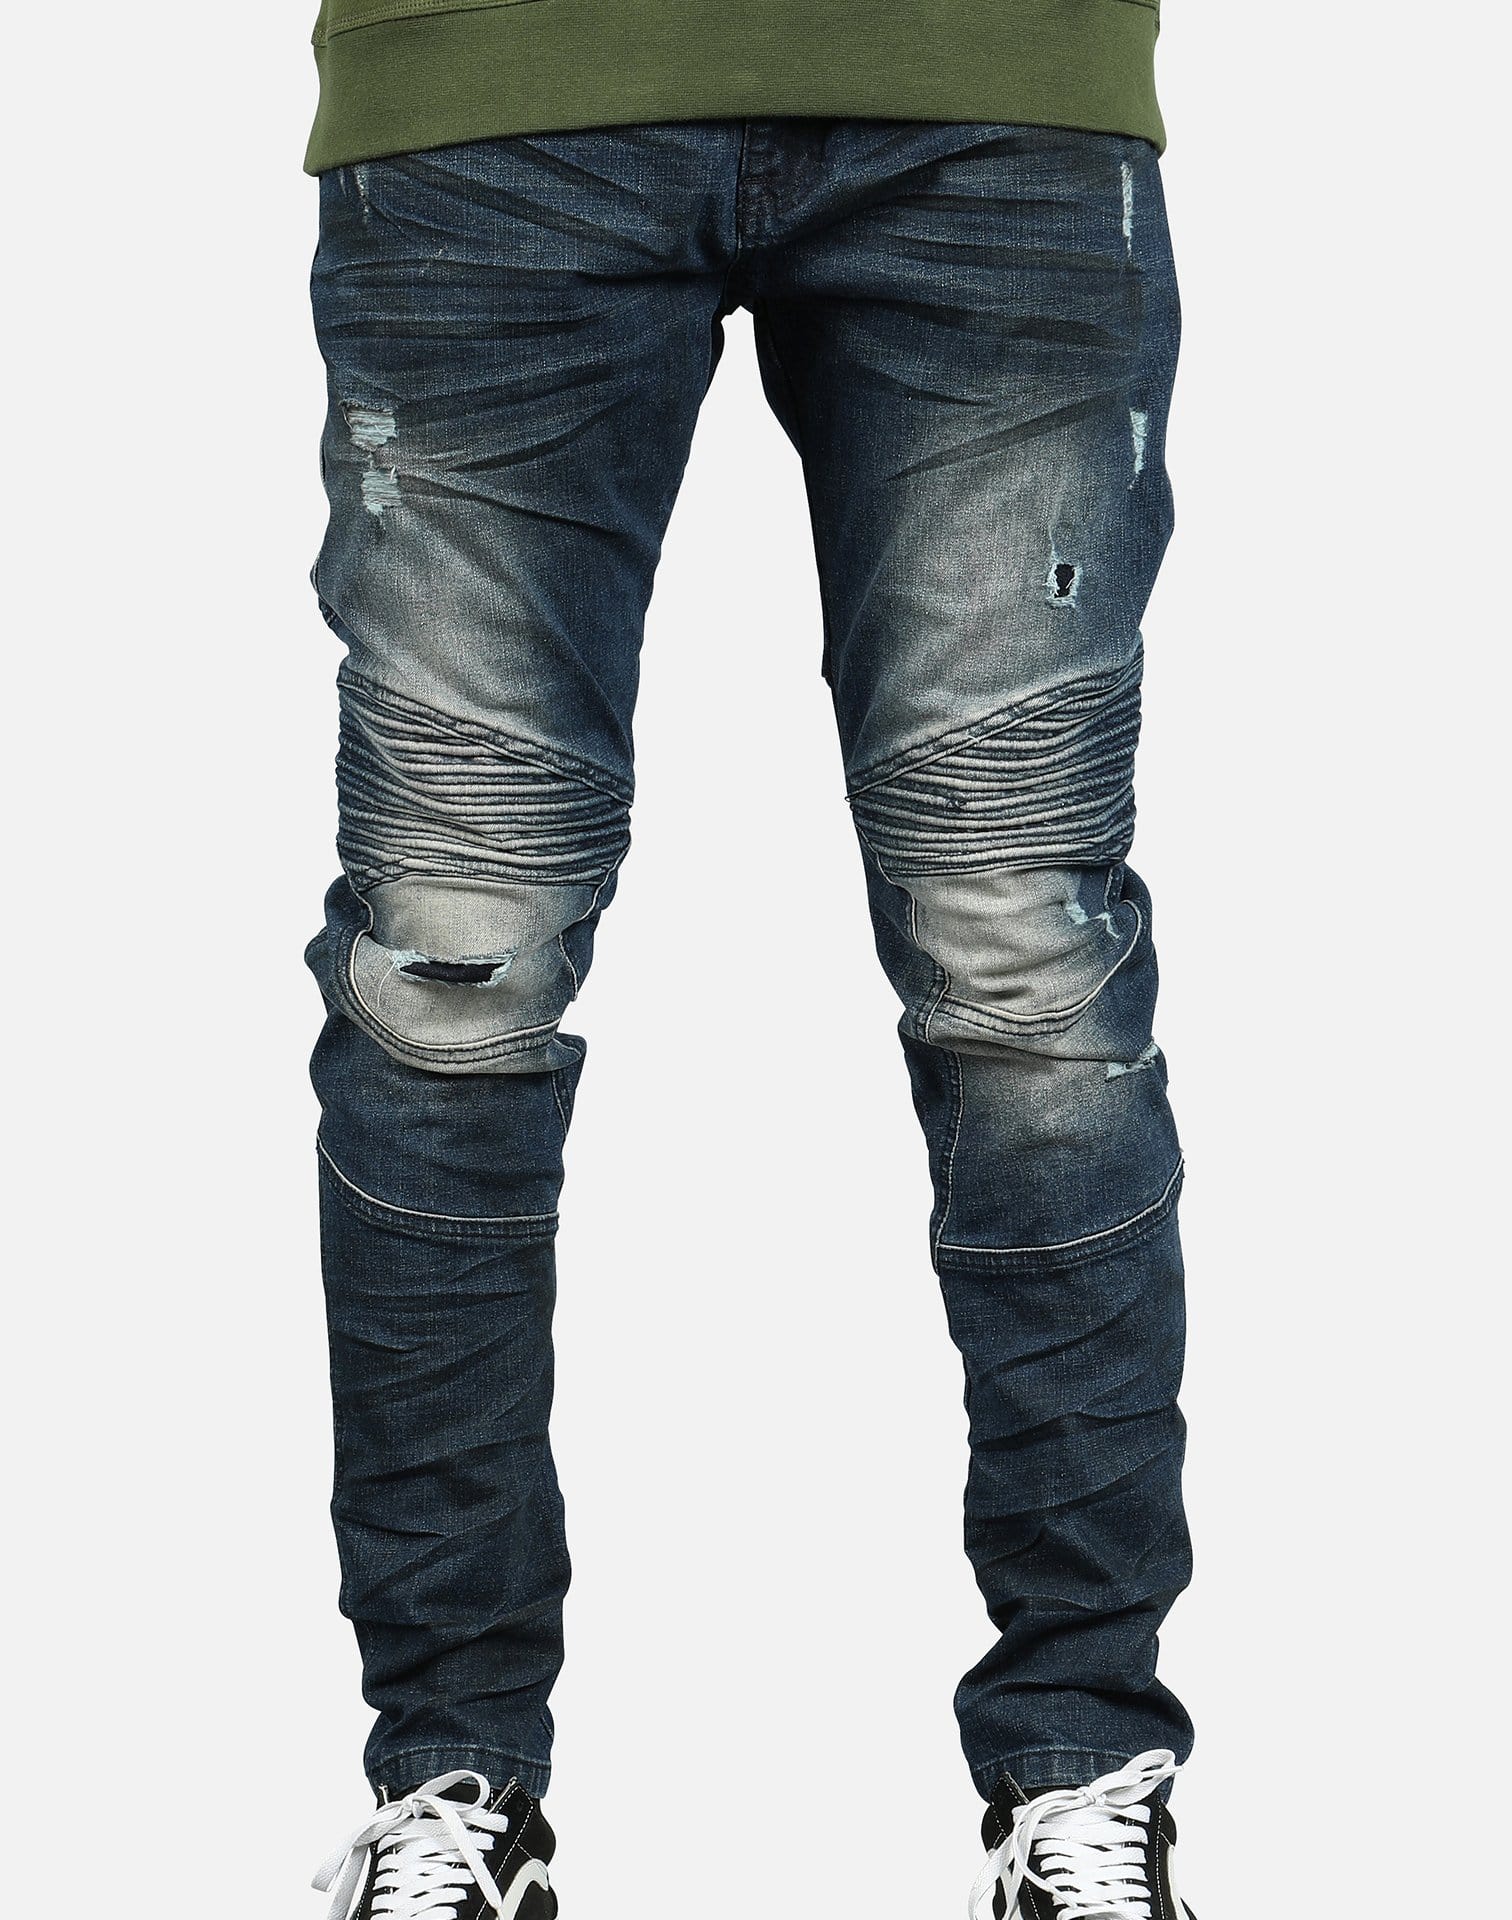 Smoke Men's Fashion Denim Jeans